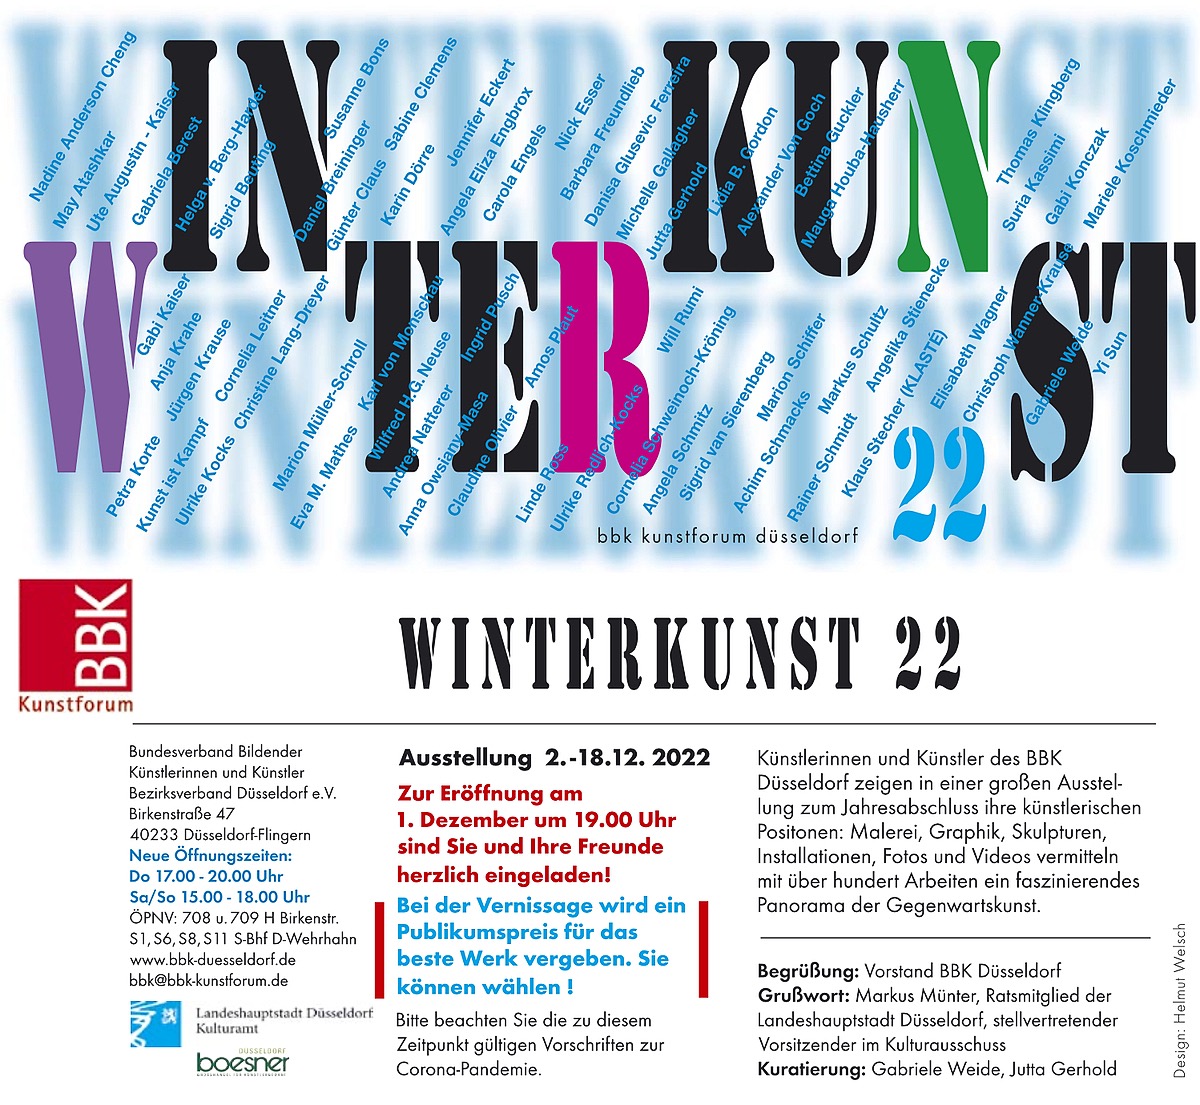 Invitation flyer for the exhibition BBK Winterkunst 22 in Duesseldorf